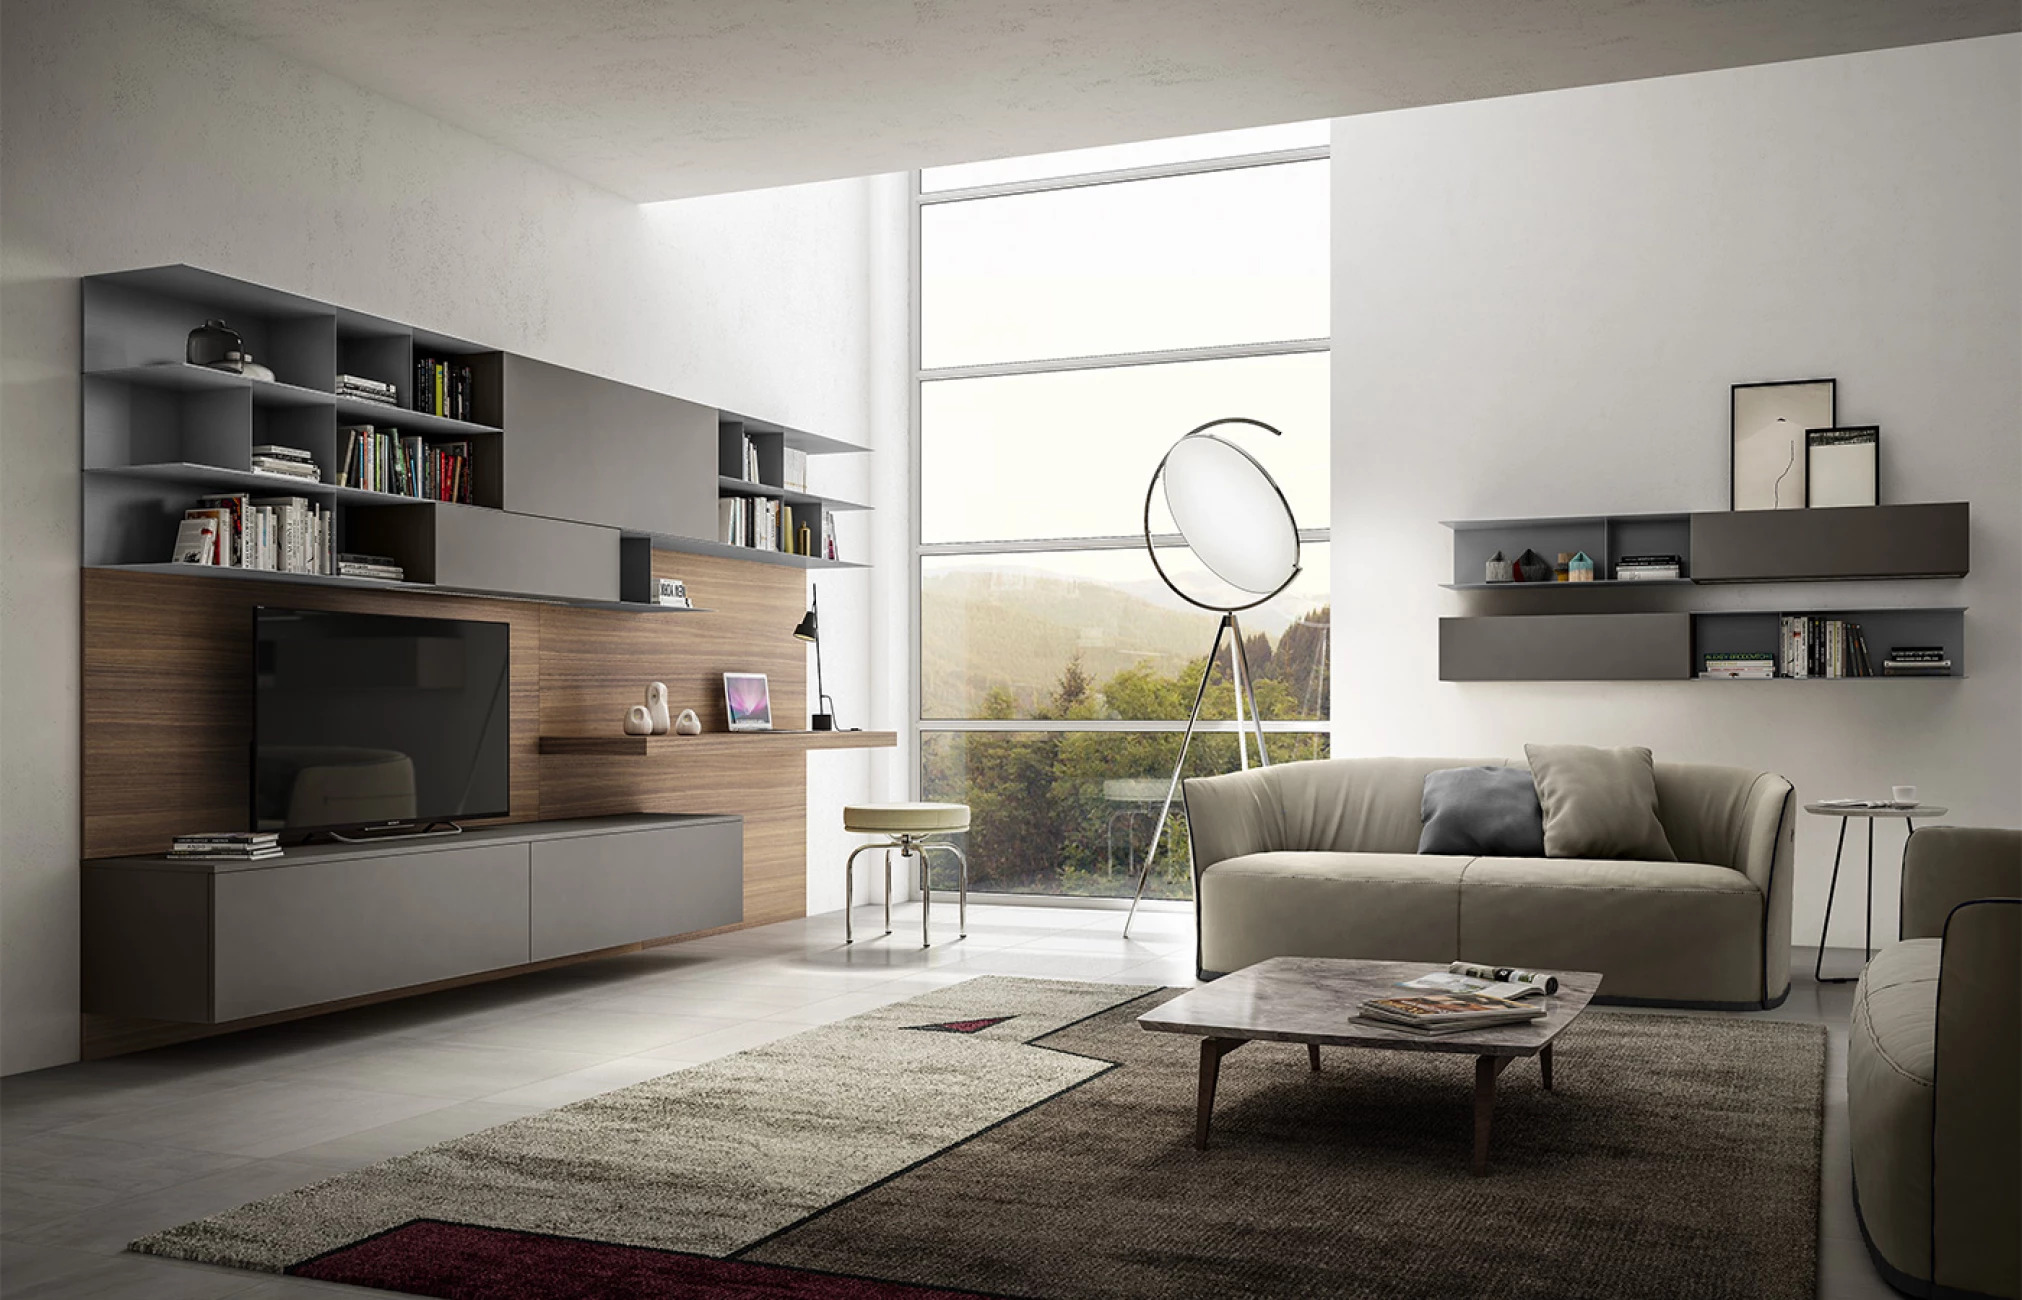 Итальянская мебель в гостиную Модерн в темных цветах, диван, стенка под телевизор, полки, ковер, окно